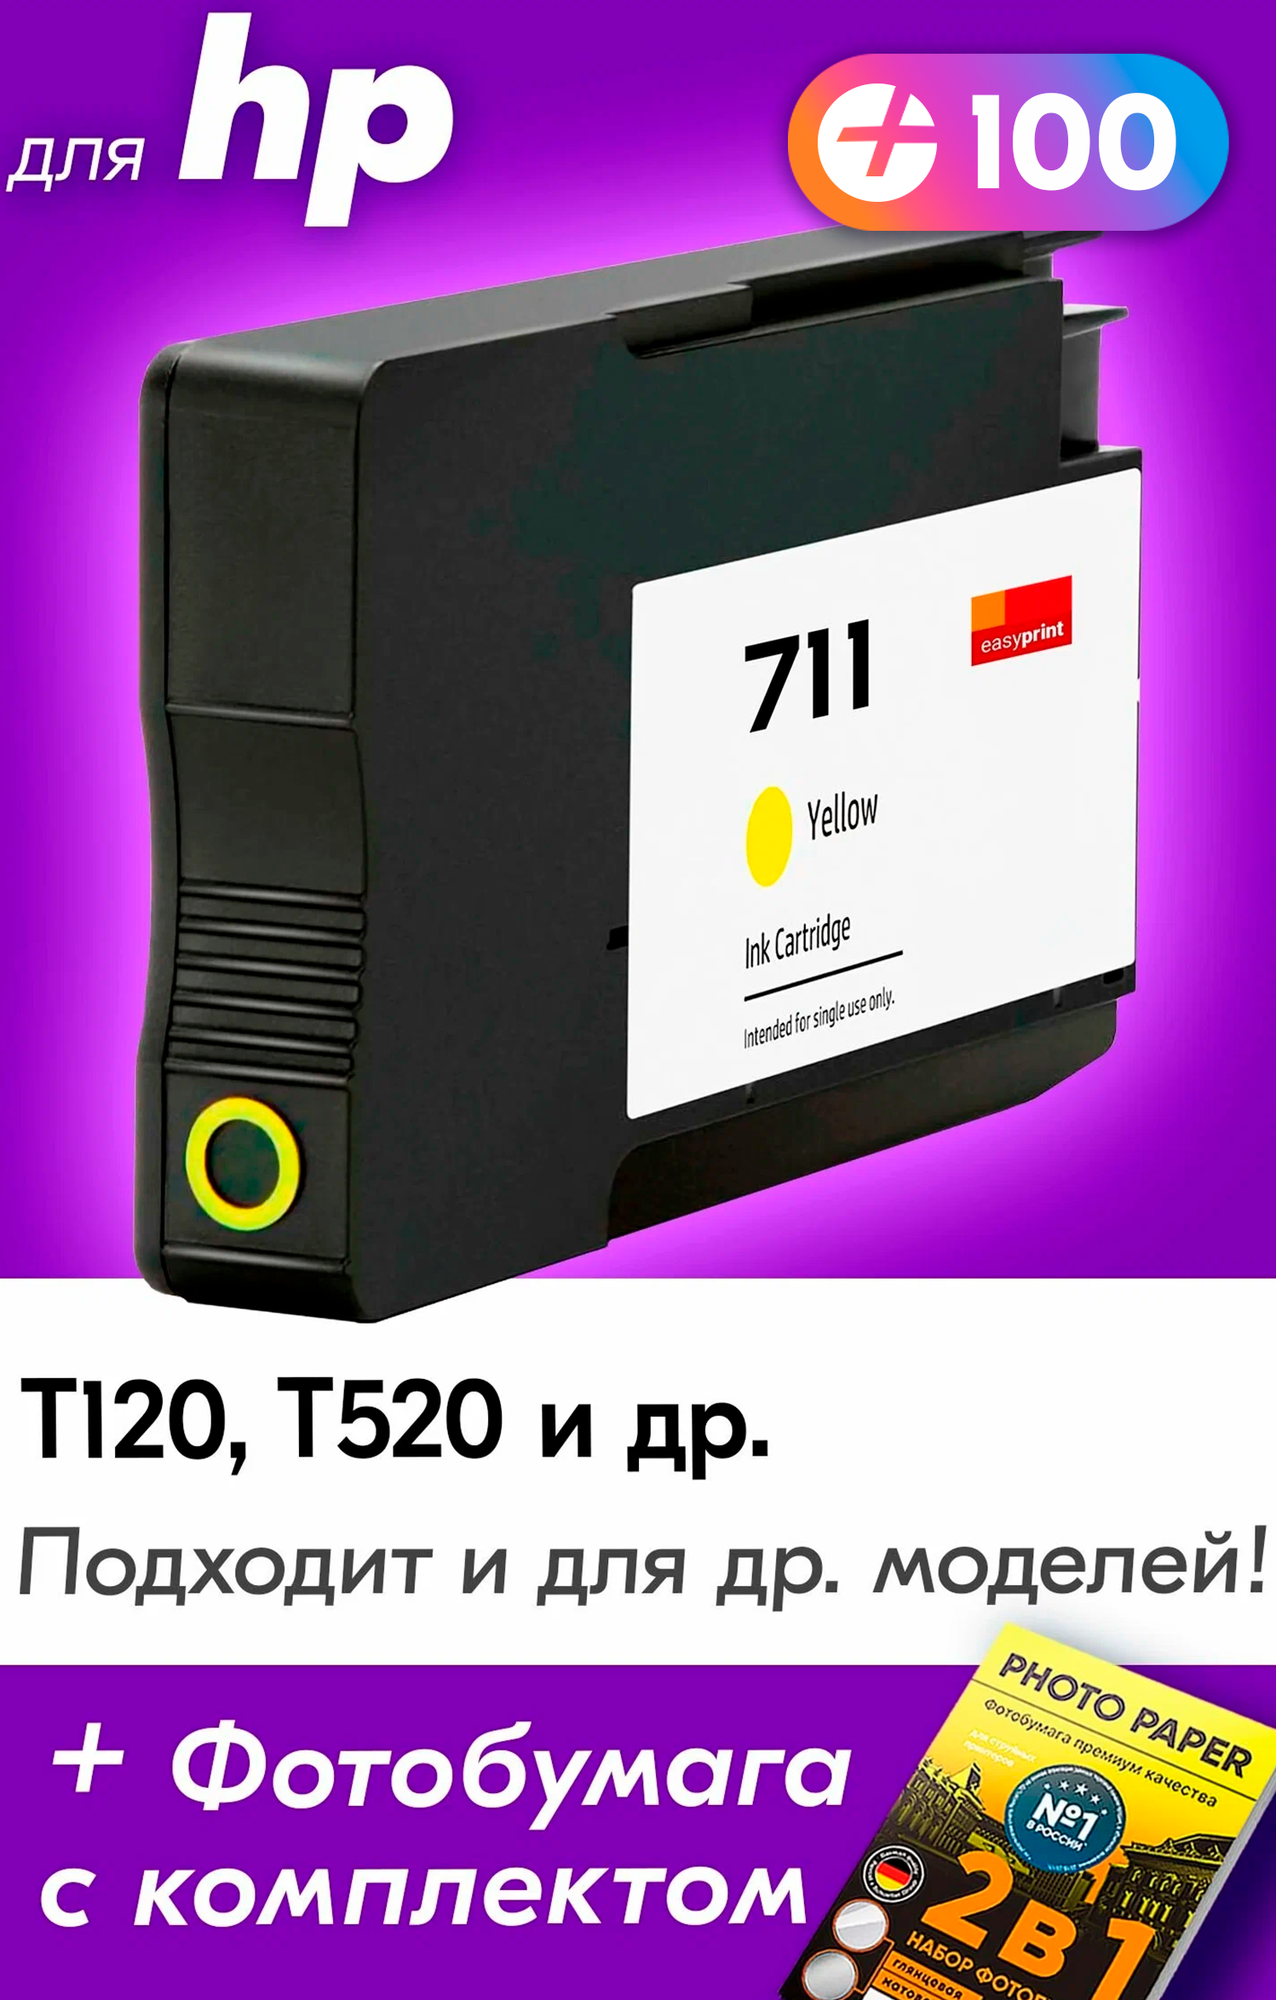 Картридж для HP 711, HP DesignJet T120, T520 и др. с чернилами (с краской) для струйного принтера, желтый (Yellow), 1 шт.